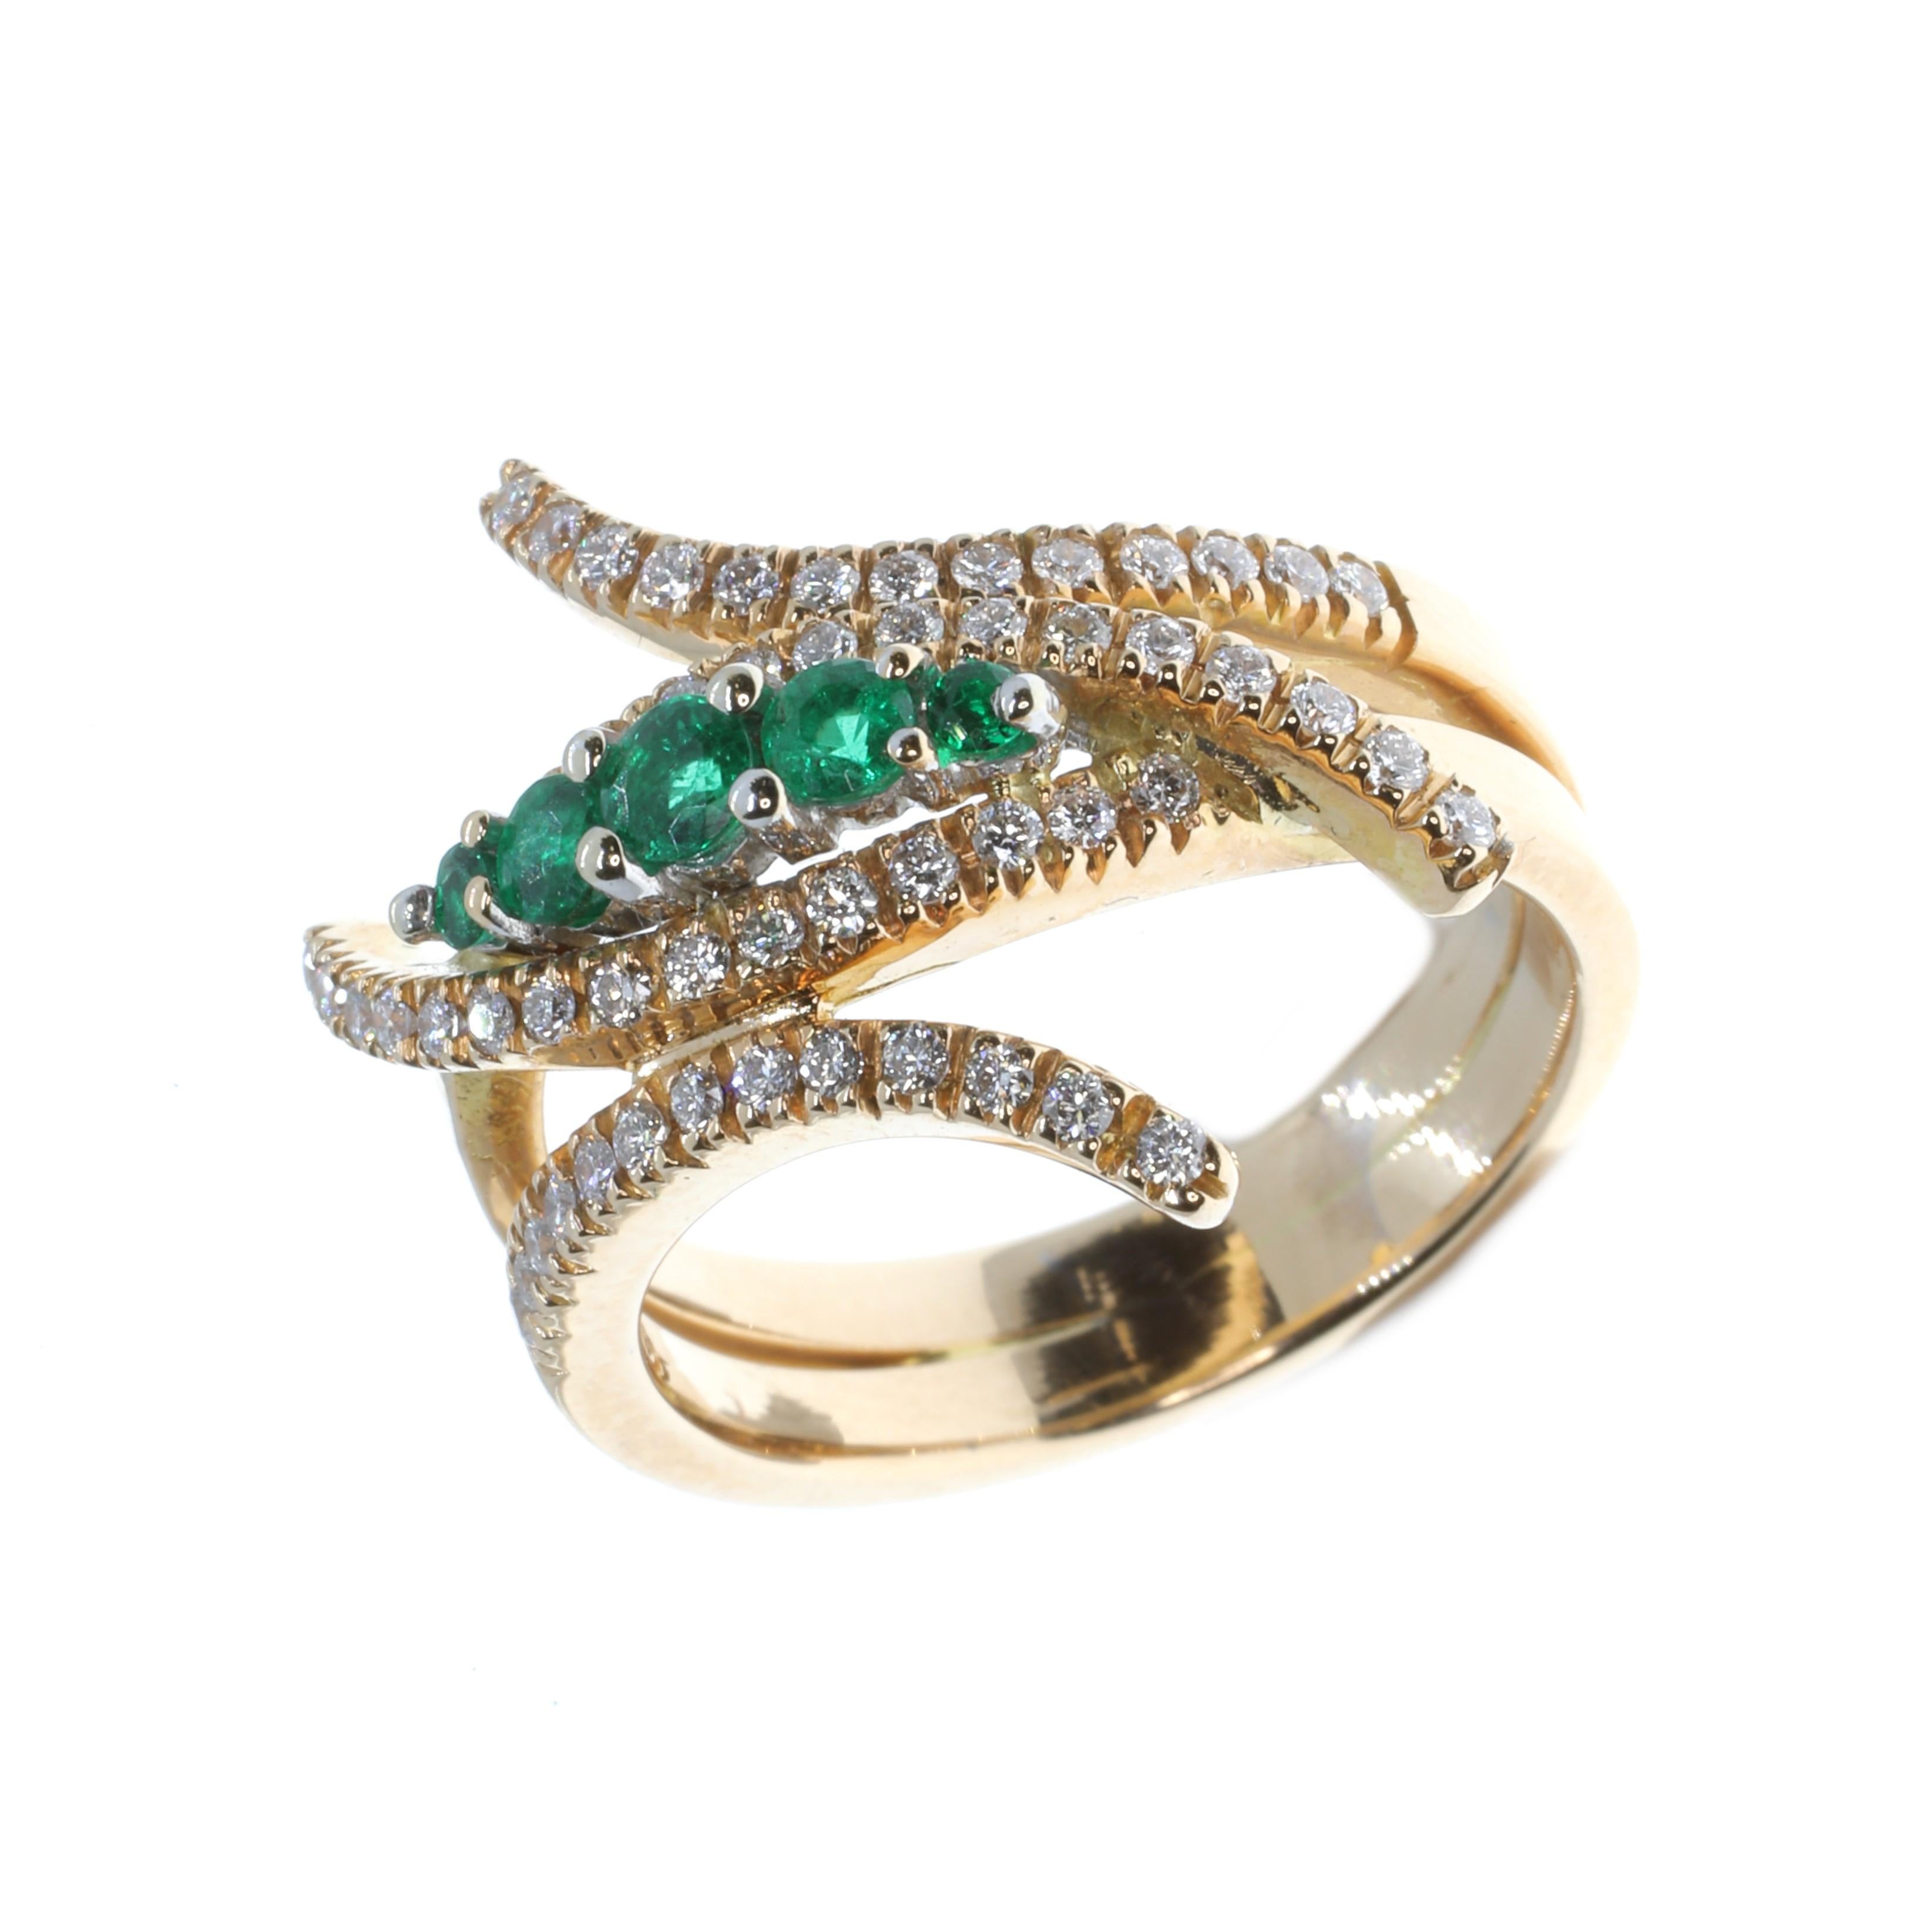 Dieser spektakuläre, moderne und luxuriöse Ring aus 18-karätigem Roségold ist ein echtes Schmuckstück. Das meisterhaft von Hand gefertigte Design und die Farbkombination erfordern Aufmerksamkeit. Dieser Ring besteht aus sorgfältig ausgewählten